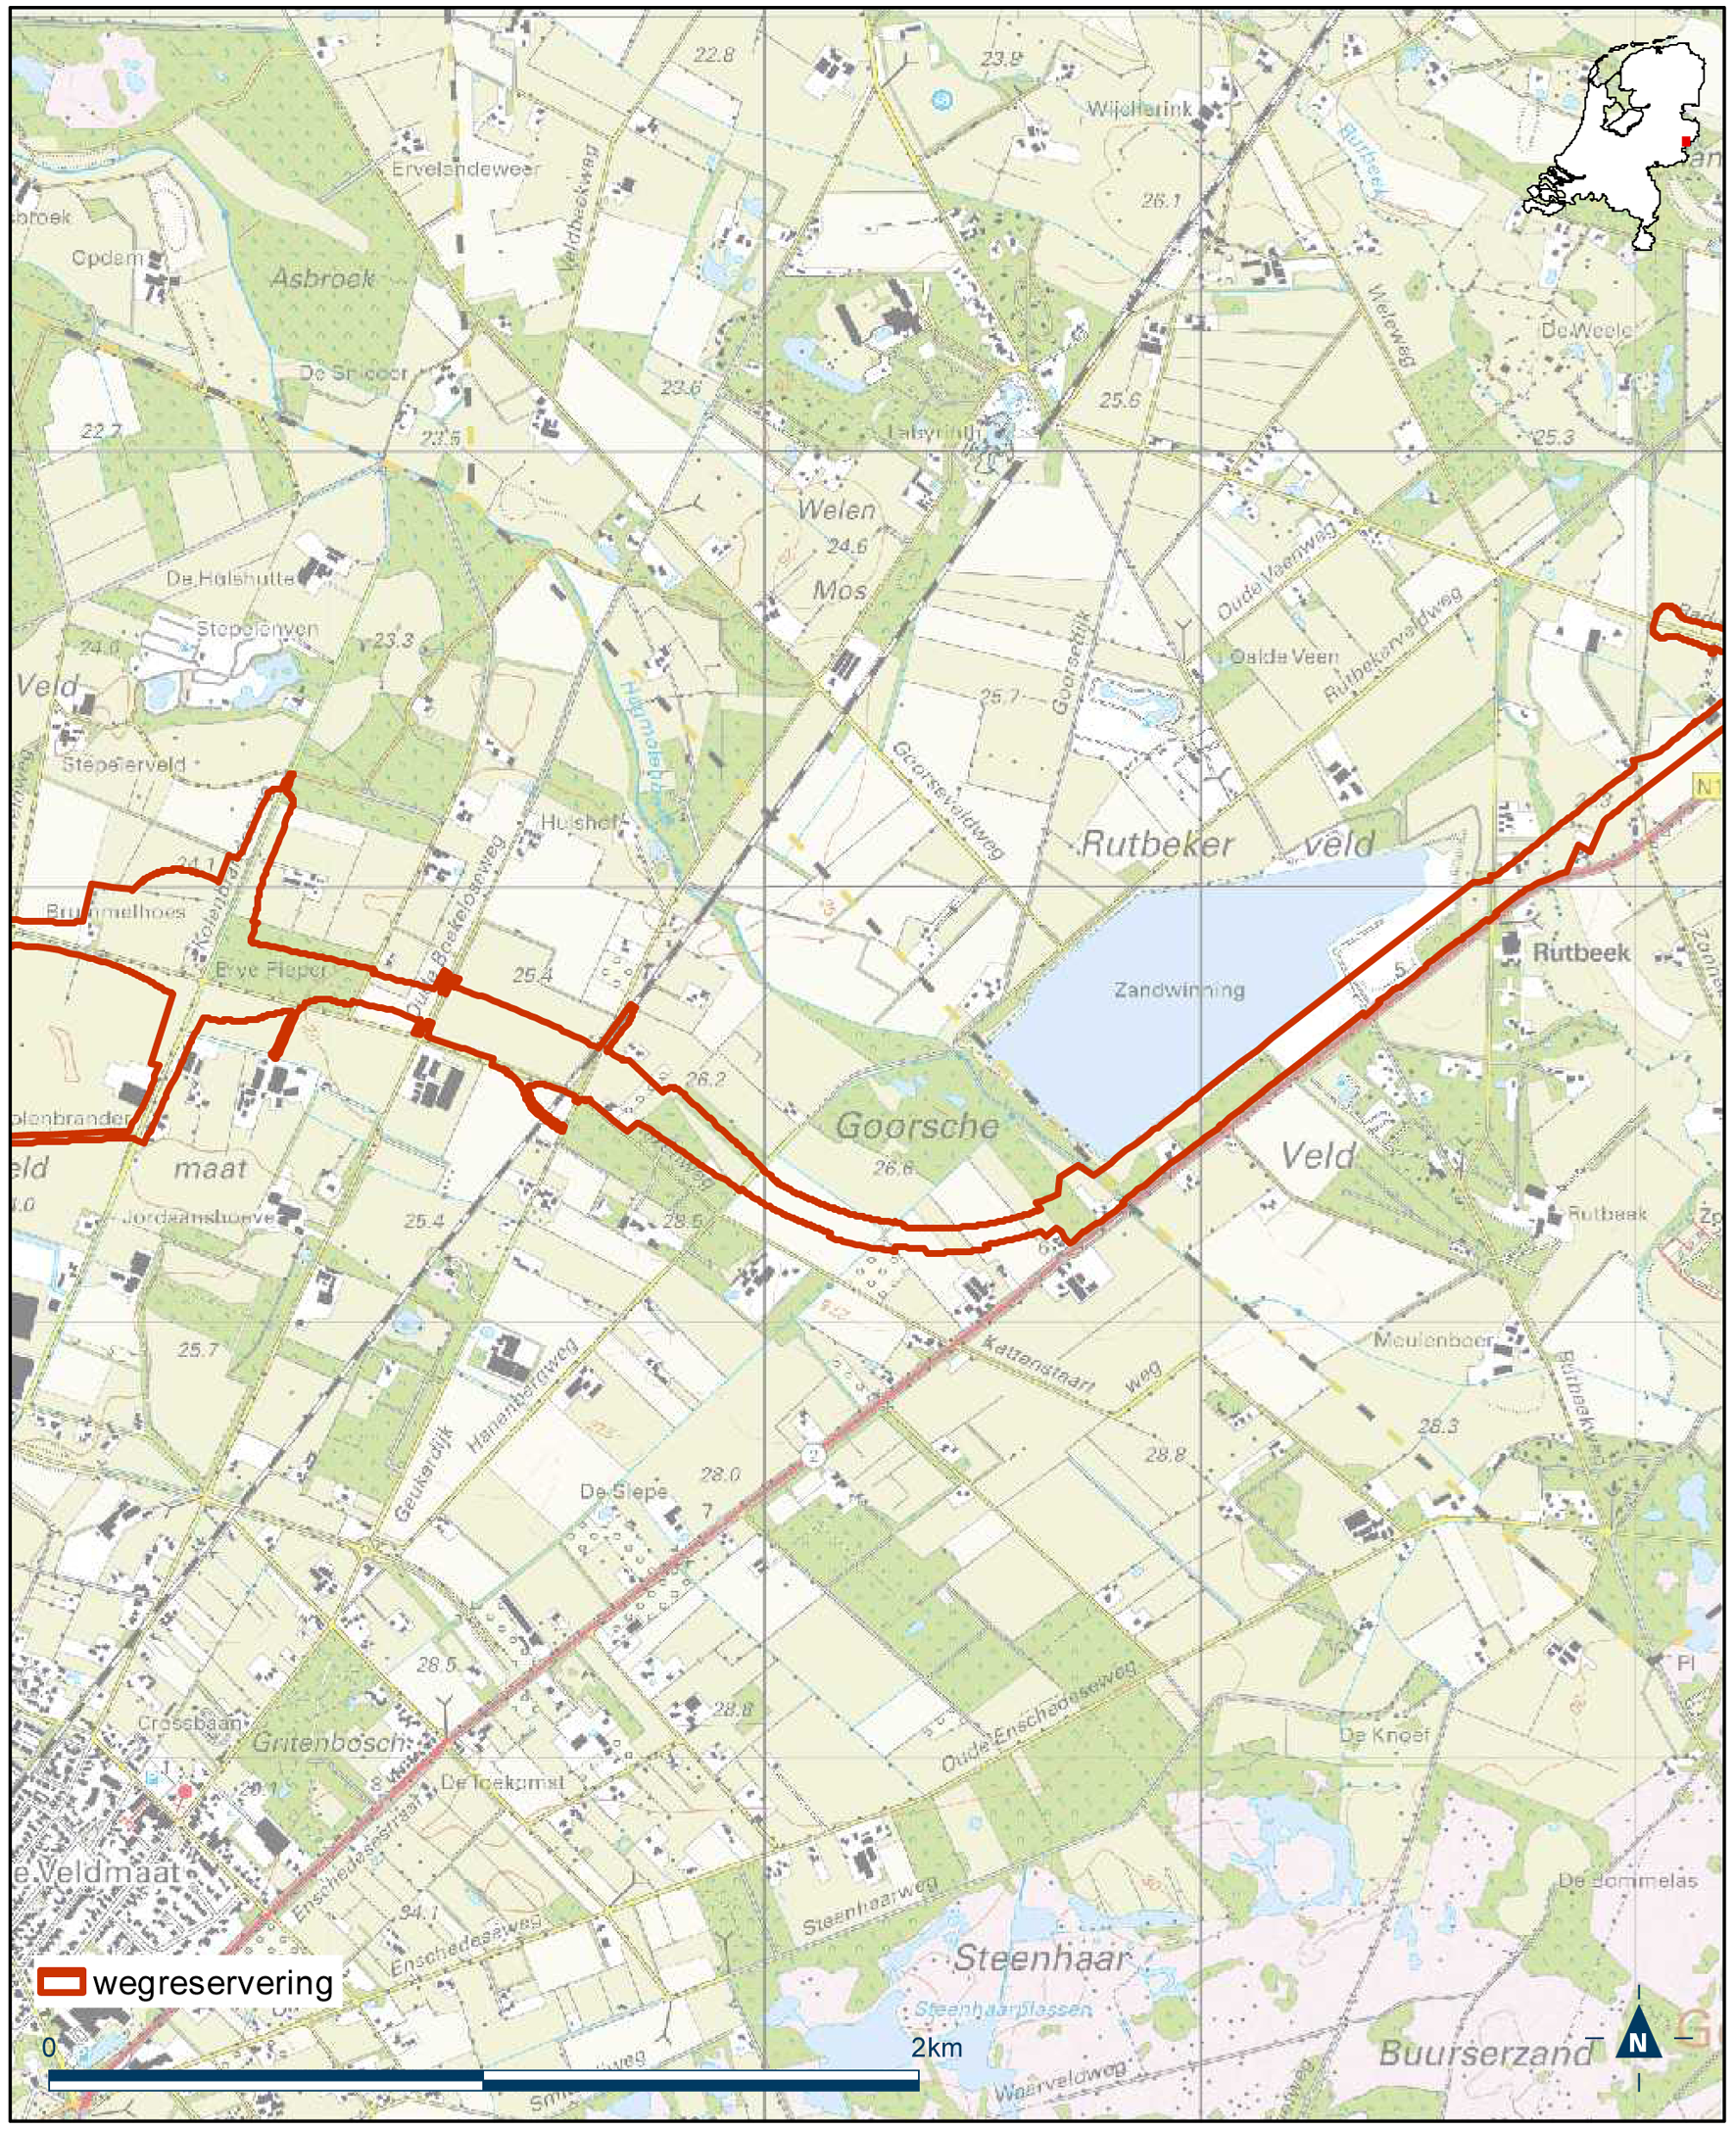 Detailkaart 10 reserveringsgebied nieuwe hoofdweg N18 Varsseveld-Enschede